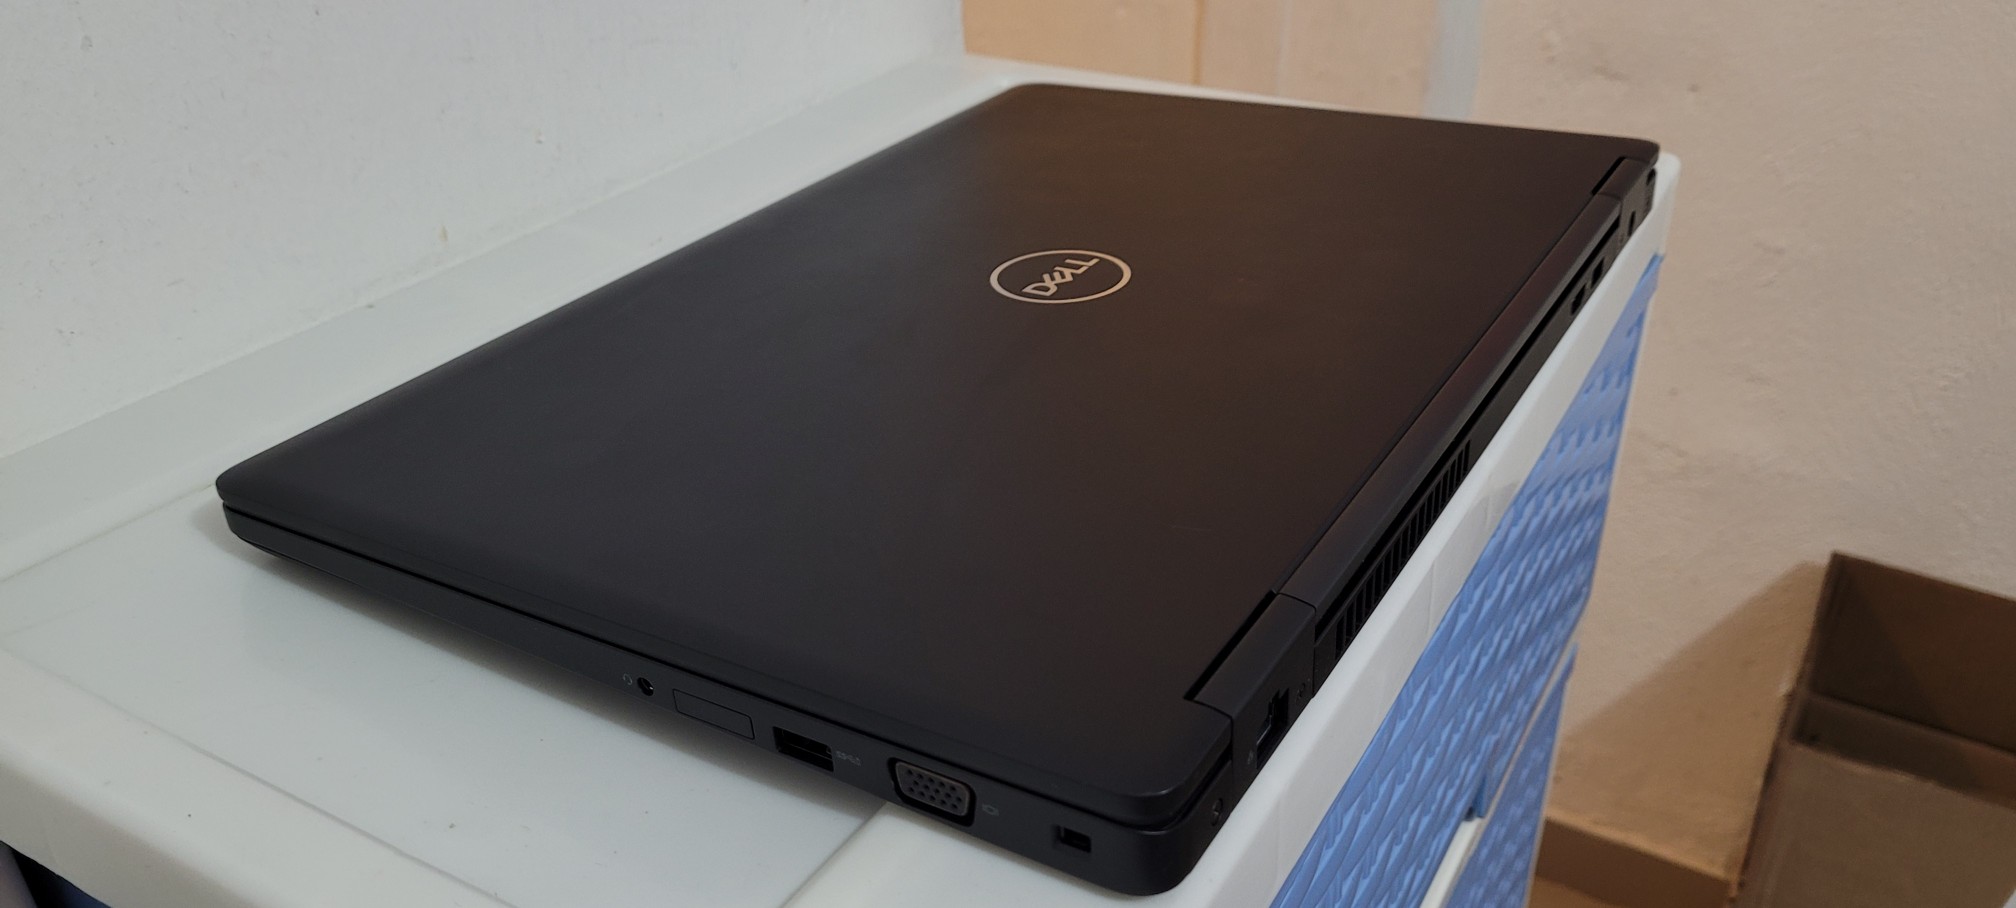 computadoras y laptops - Dell 5580 17 Pulg Core i5 7ma Gen Ram 8gb ddr4 Disco 256gb SSD Wifi Bluetoth 2